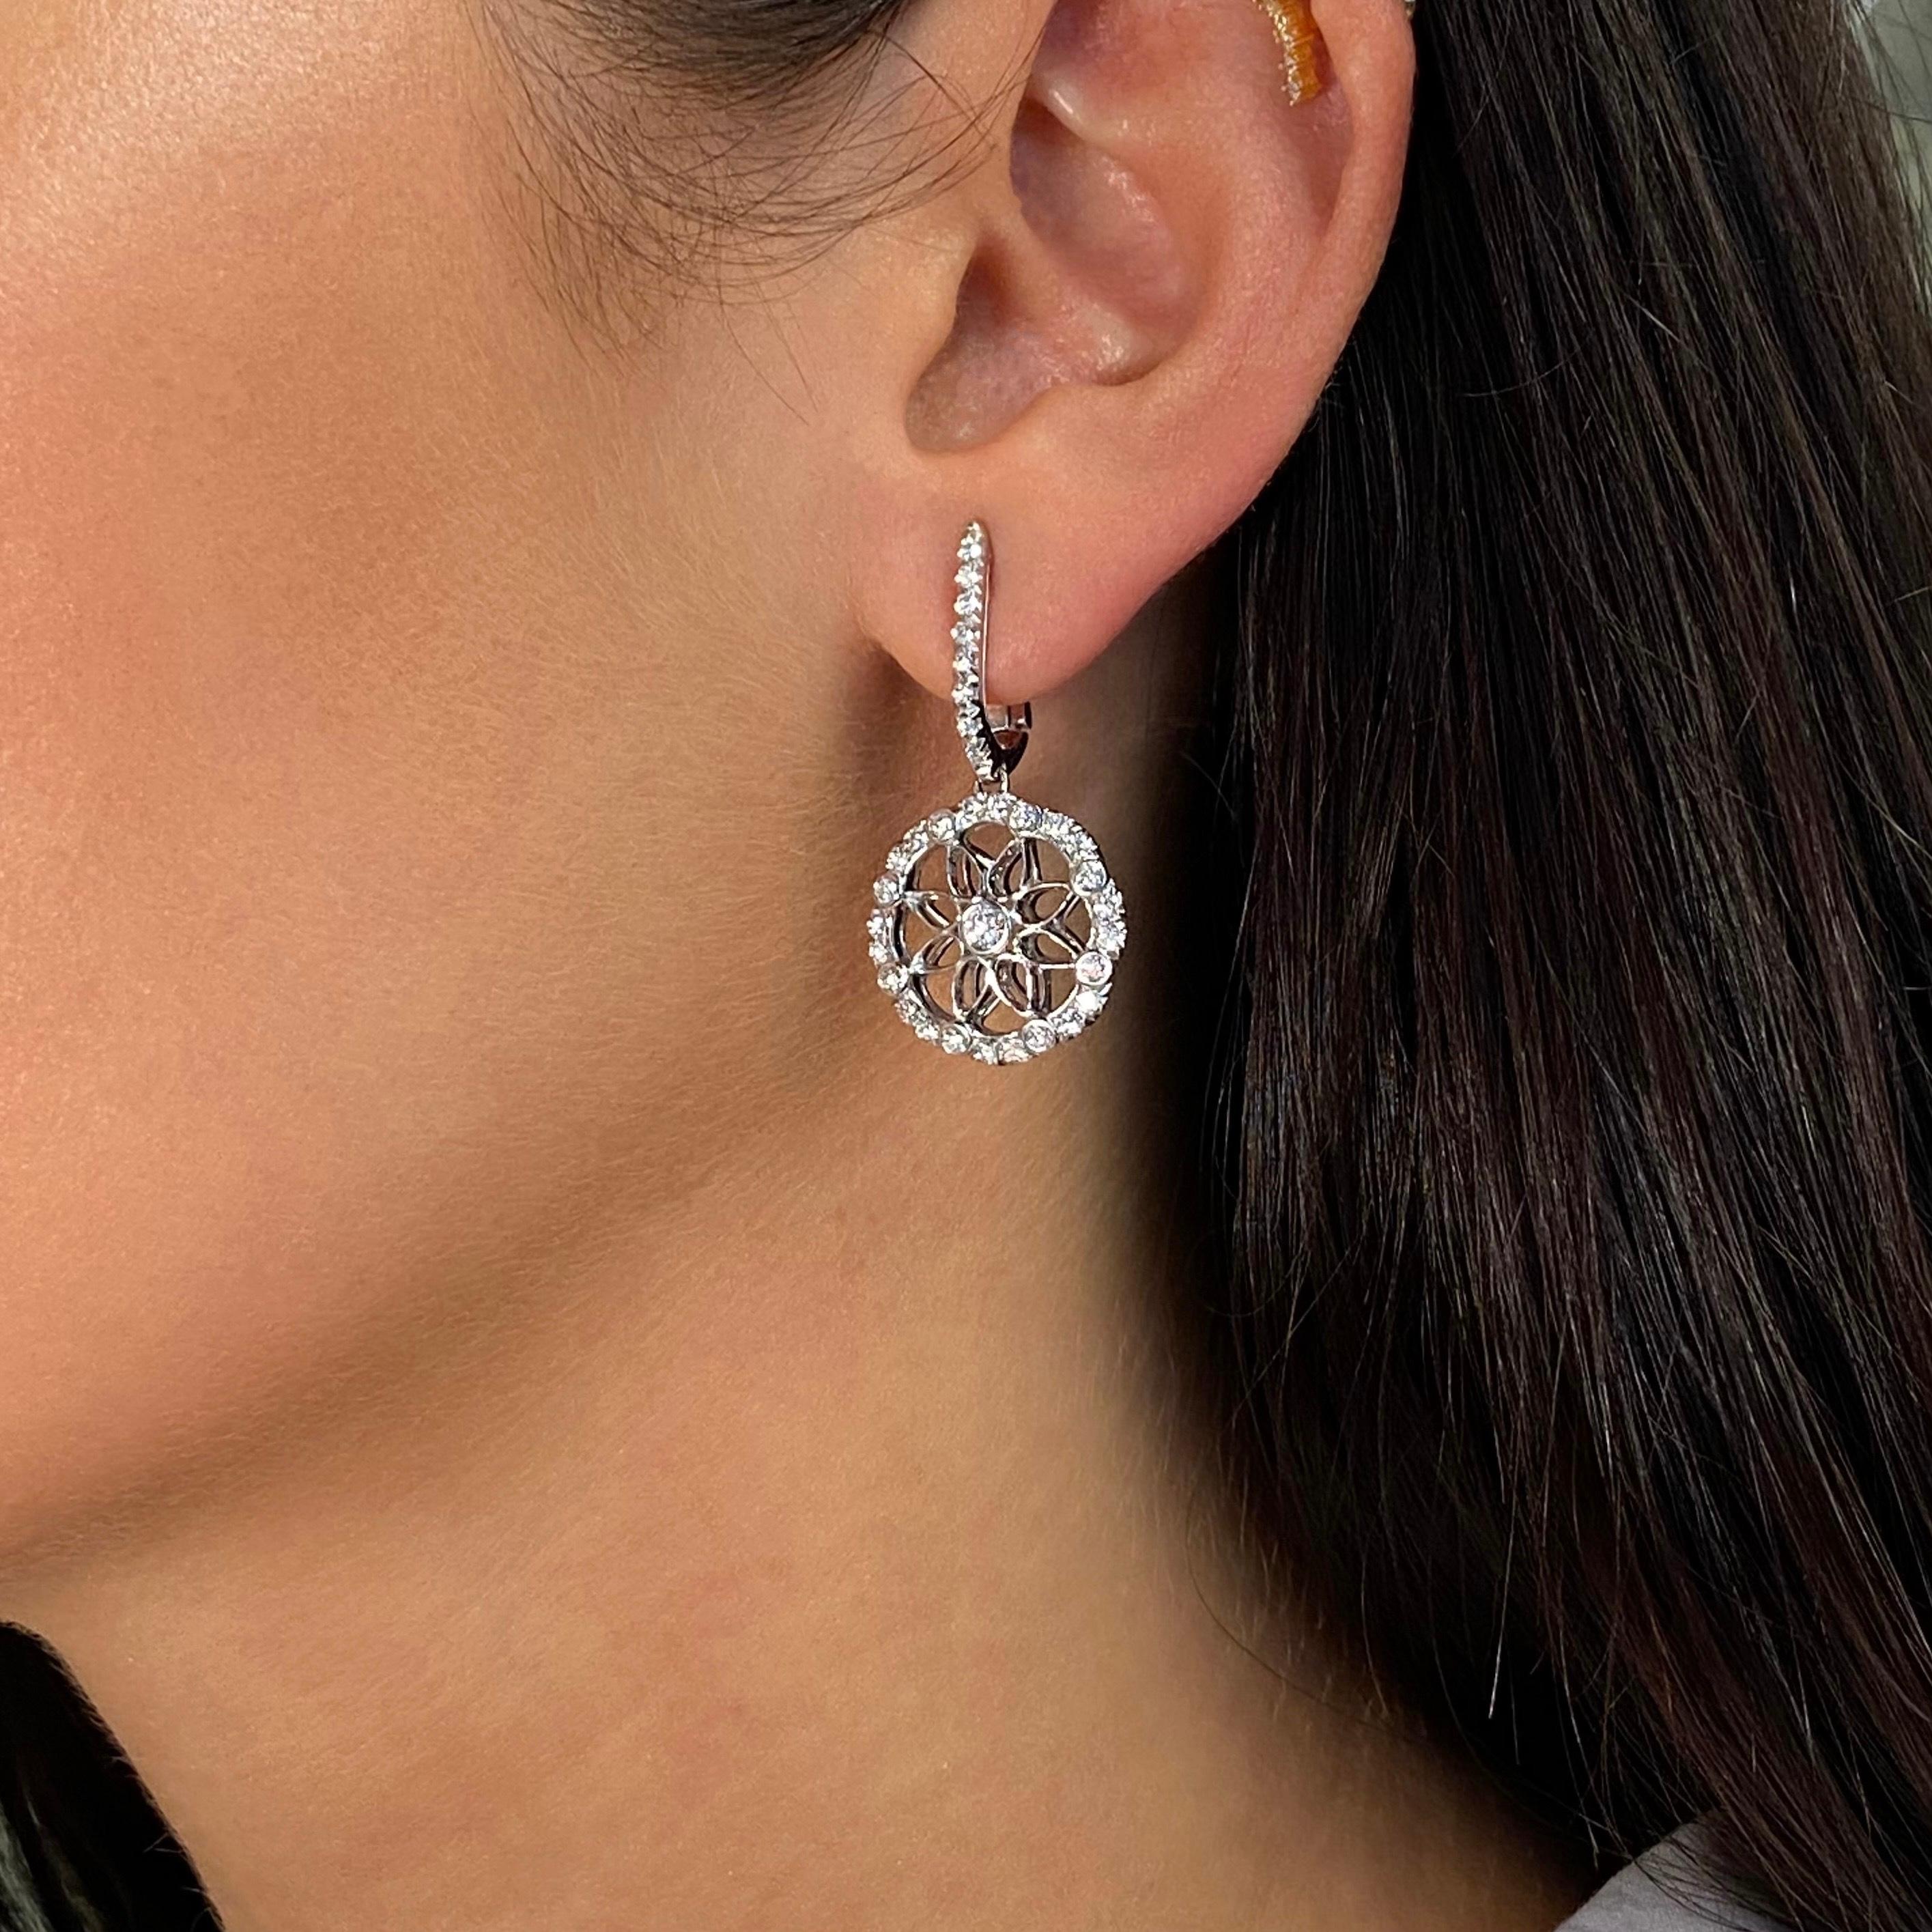 Ces magnifiques boucles d'oreilles en diamant de taille moyenne, avec leurs somptueux détails en diamant, créent un look qui vous fera vous sentir vraiment luxueuse et élégante. Présenté en or blanc 18 carats. Elle présente un ensemble de diamants